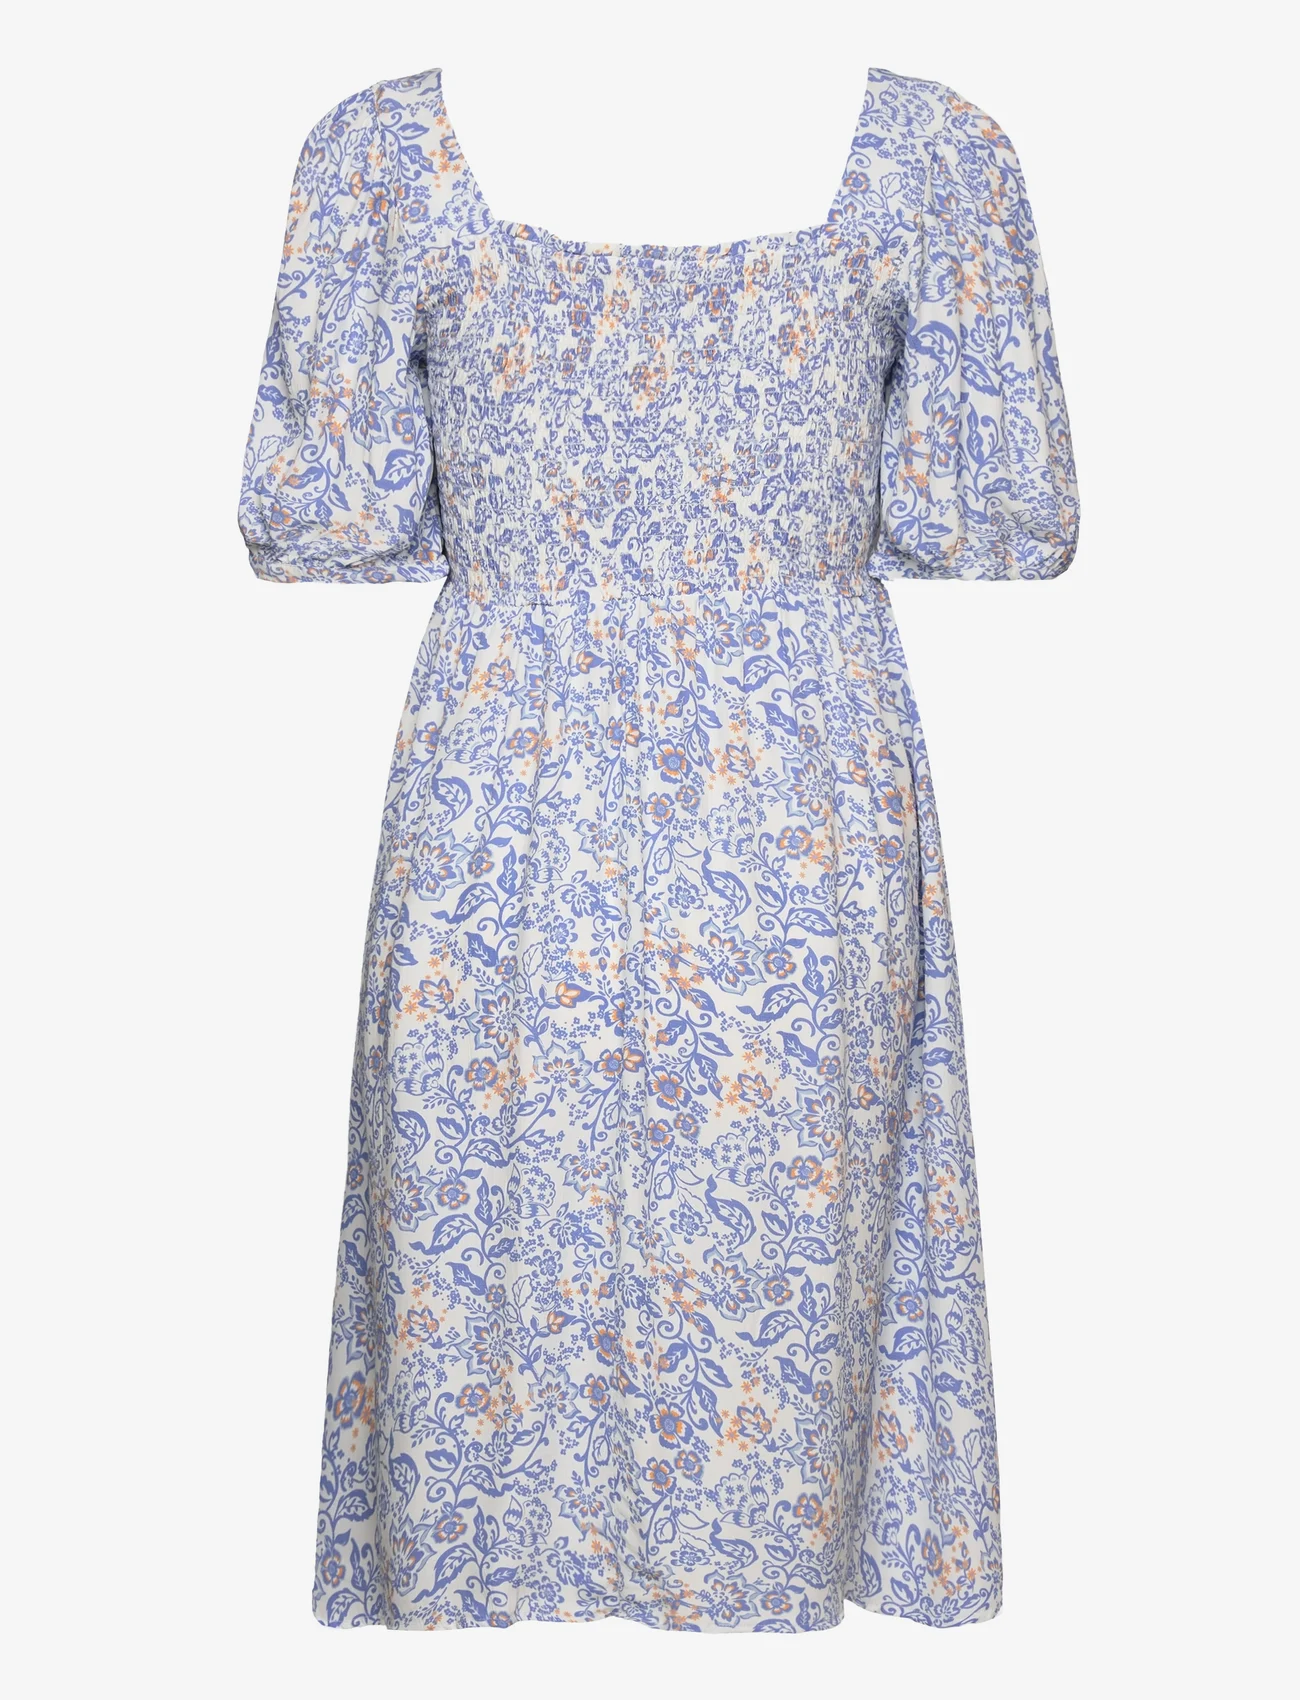 ODD MOLLY - Judith Short Dress - festklær til outlet-priser - cornflower blue - 1